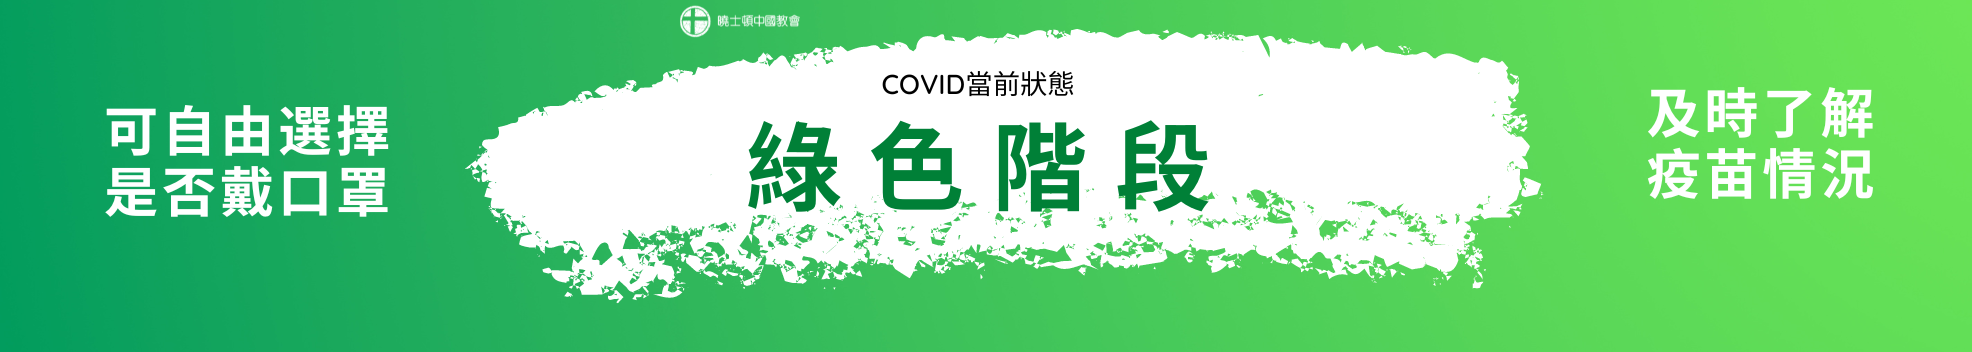 Covid - Green Zone